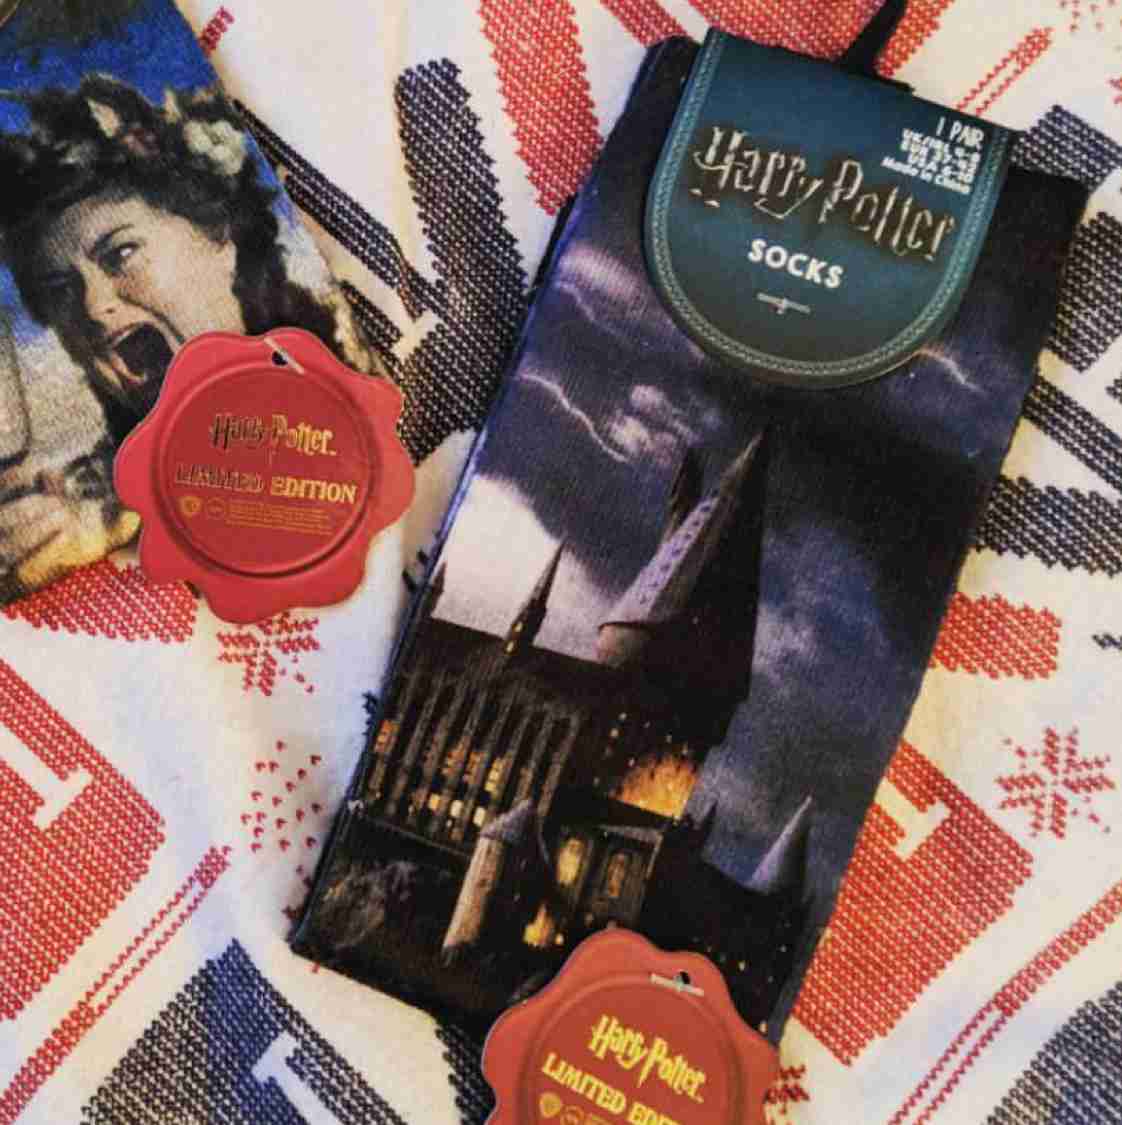 Hogwarts socks